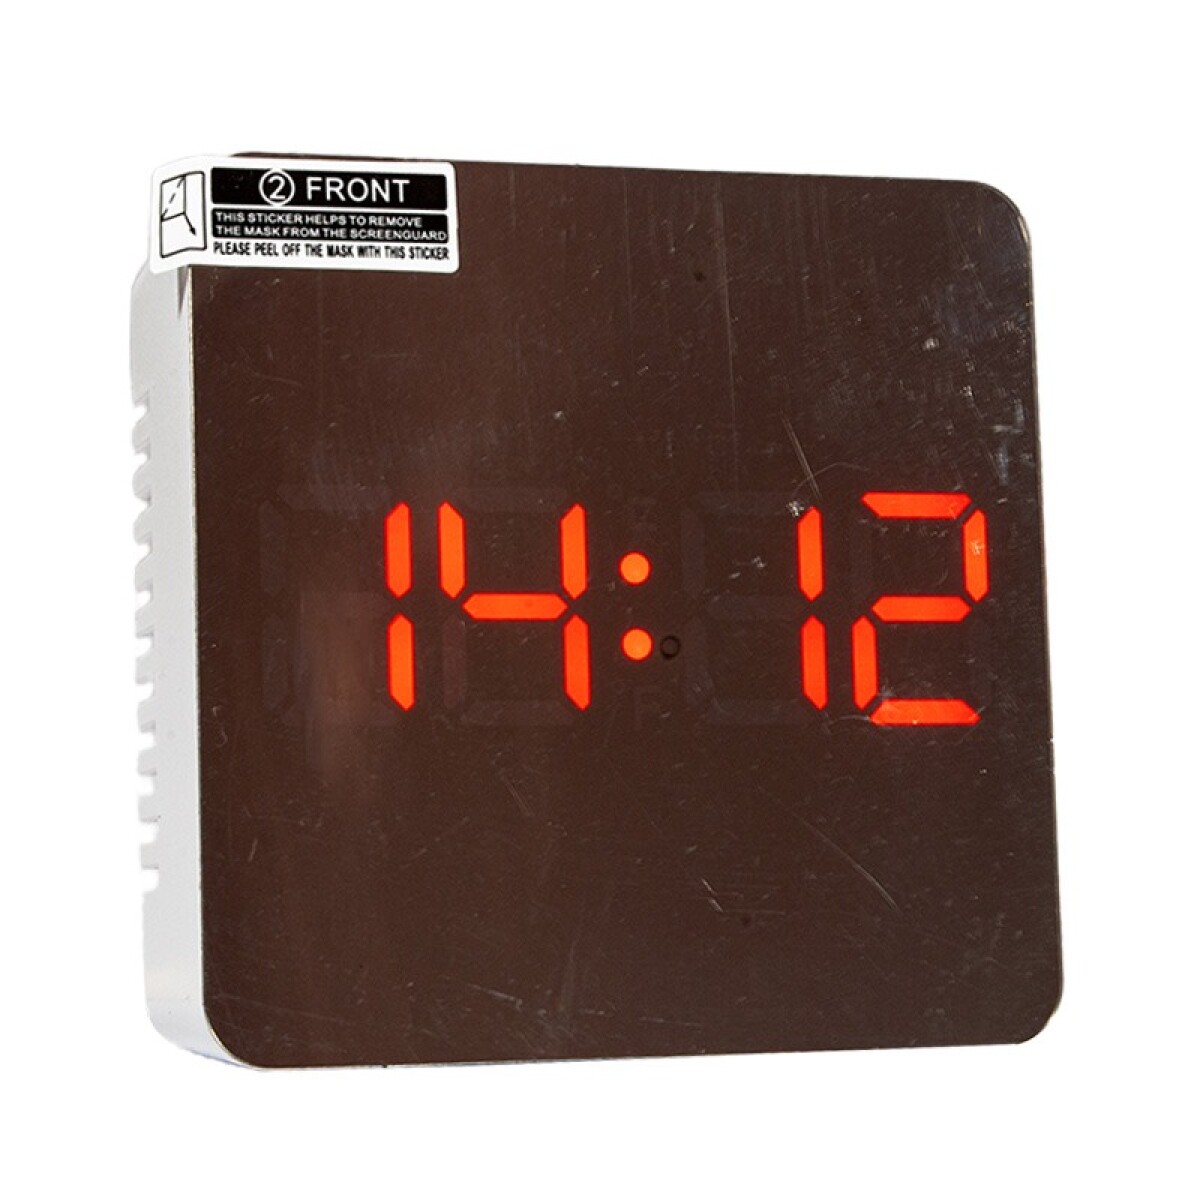 Reloj espejado digital despertador 